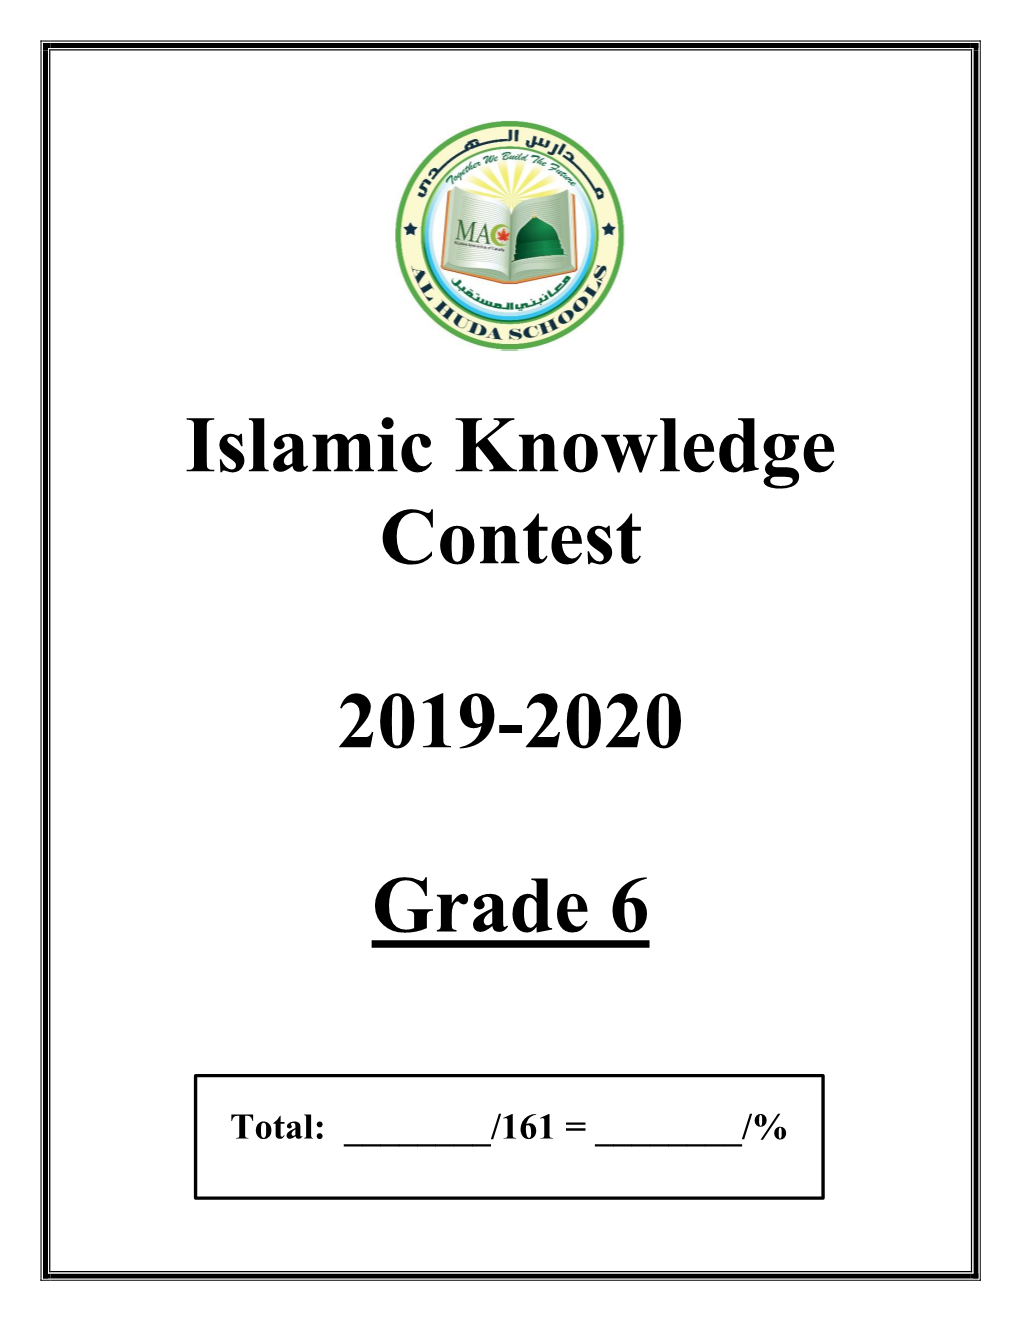 Islamic Knowledge Contest 2019-2020 Grade 6